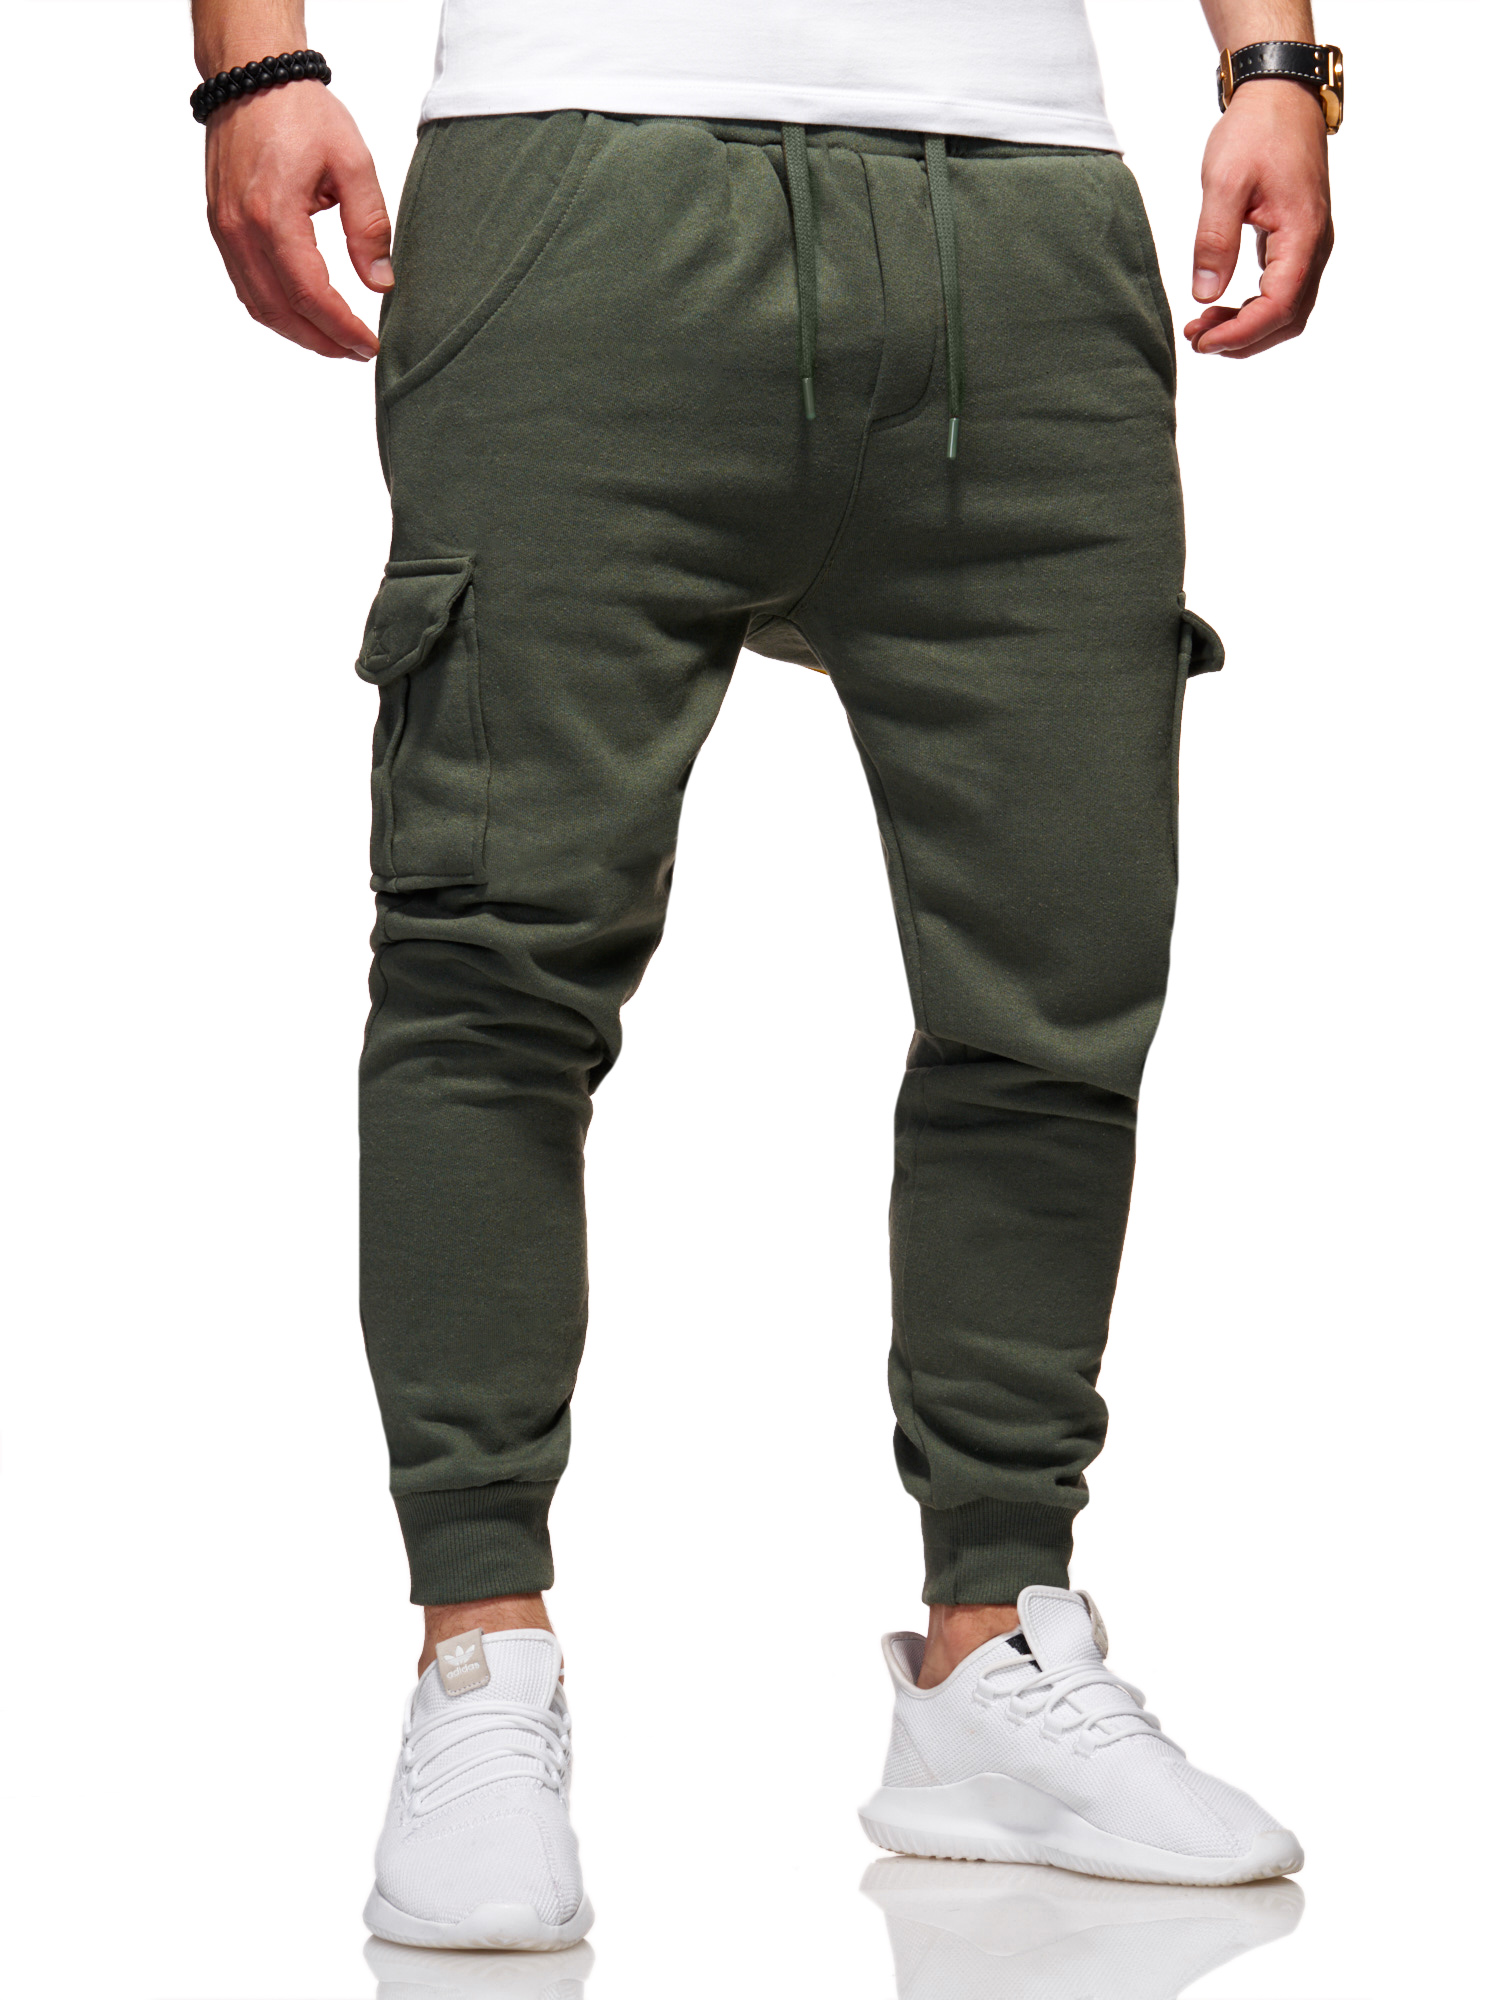 Тканевые брюки behype Jogging Combat, хаки